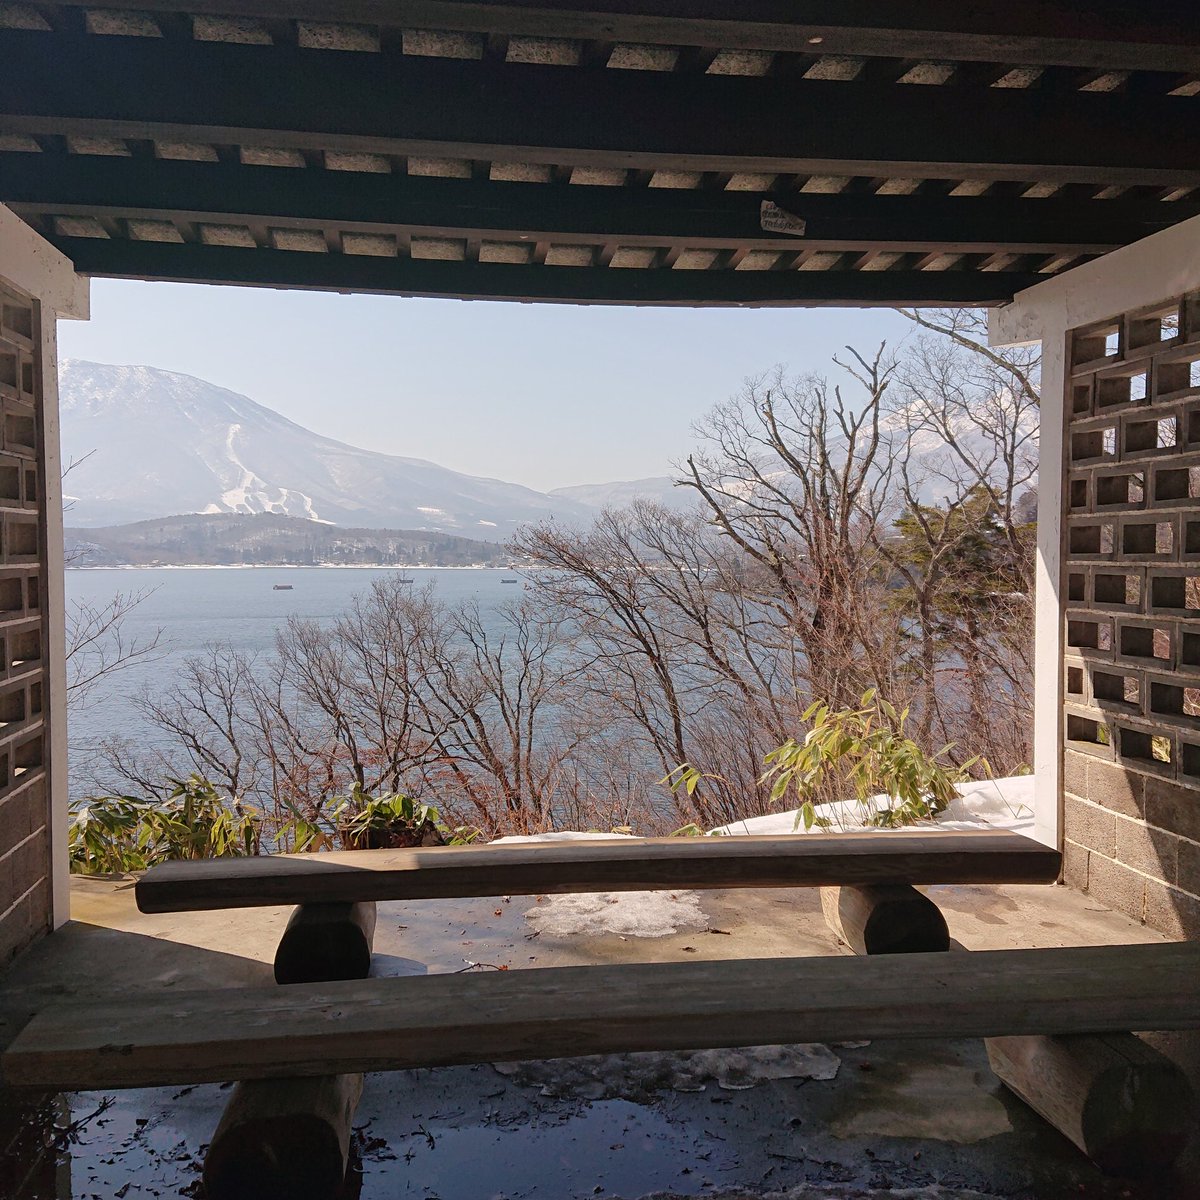 野尻湖を見下ろす展望台より。
#妙高山
#黒姫山